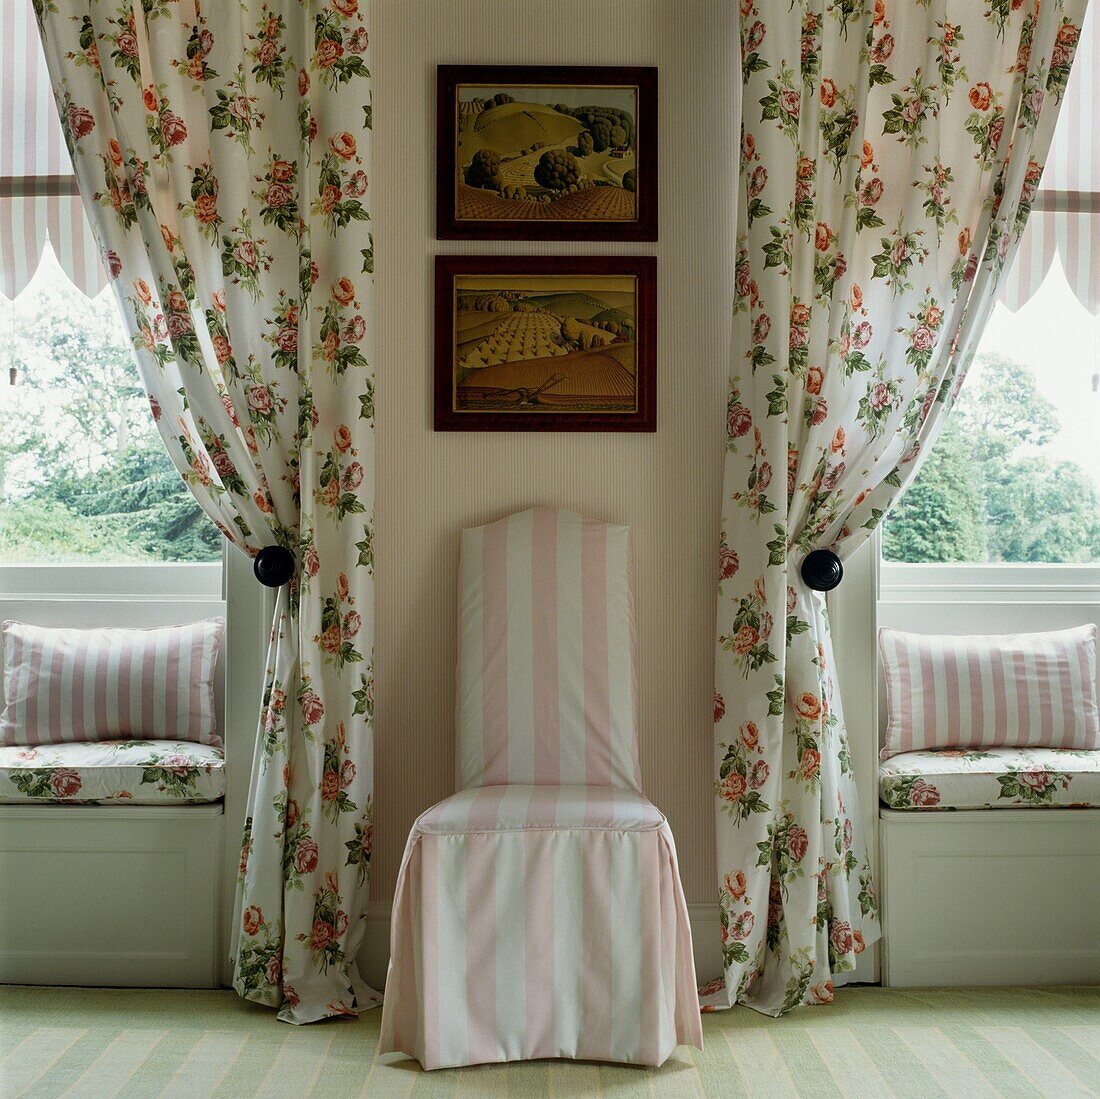 Geblümte Vorhänge und Fensterbank mit gepolstertem rosa-weiß gestreiftem Stuhl